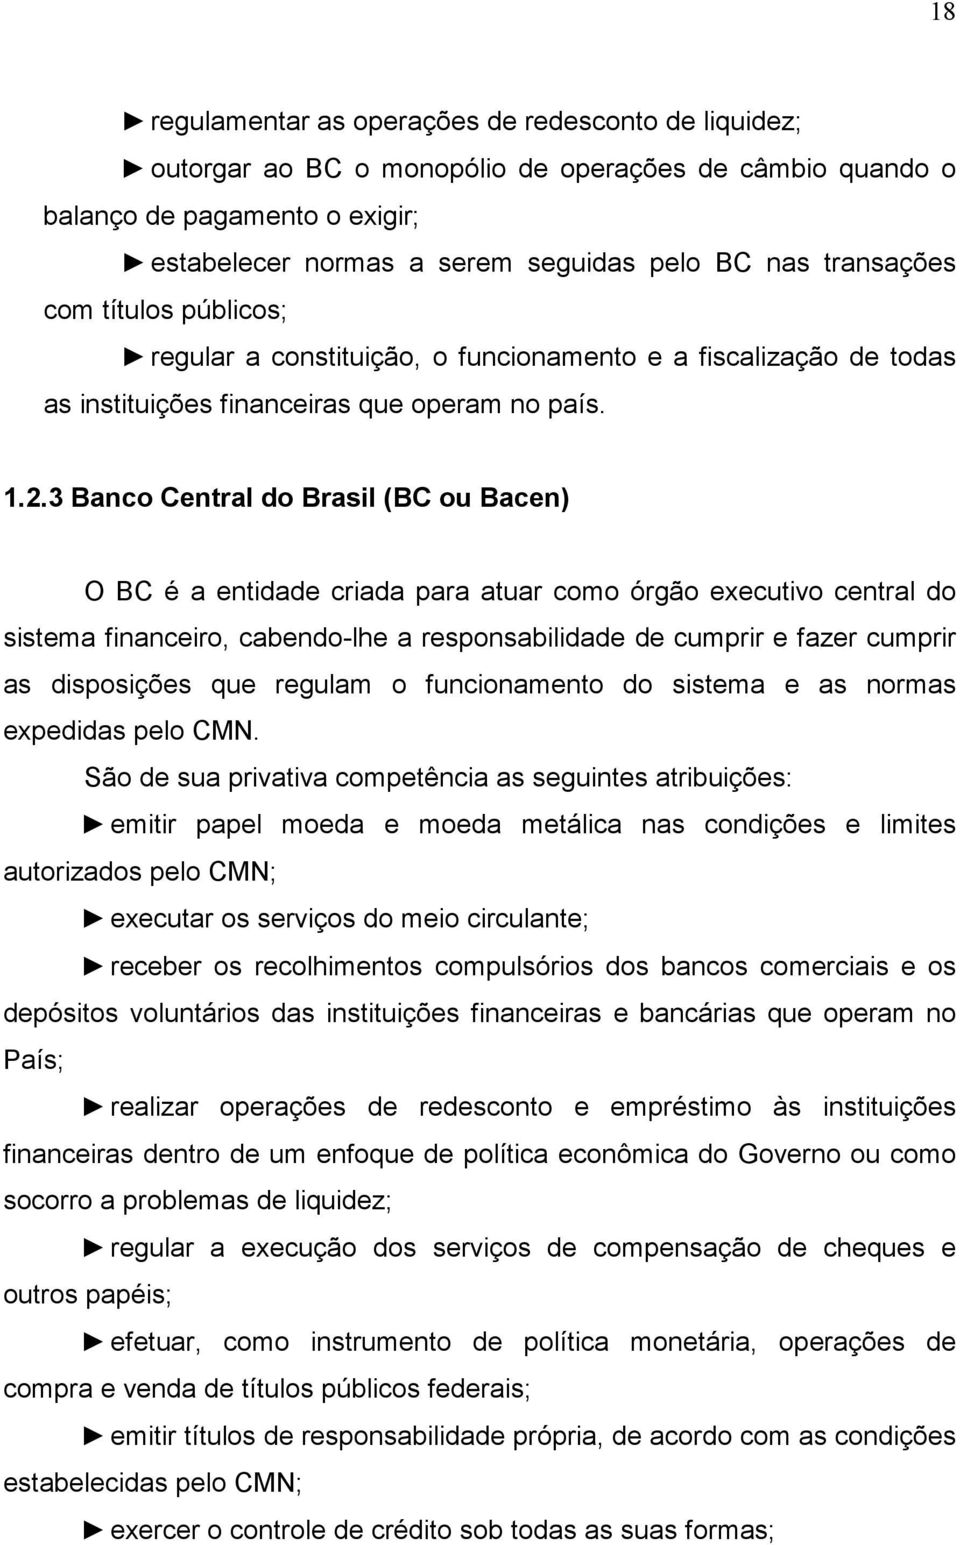 3 Banco Central do Brasil (BC ou Bacen) O BC é a entidade criada para atuar como órgão executivo central do sistema financeiro, cabendo-lhe a responsabilidade de cumprir e fazer cumprir as